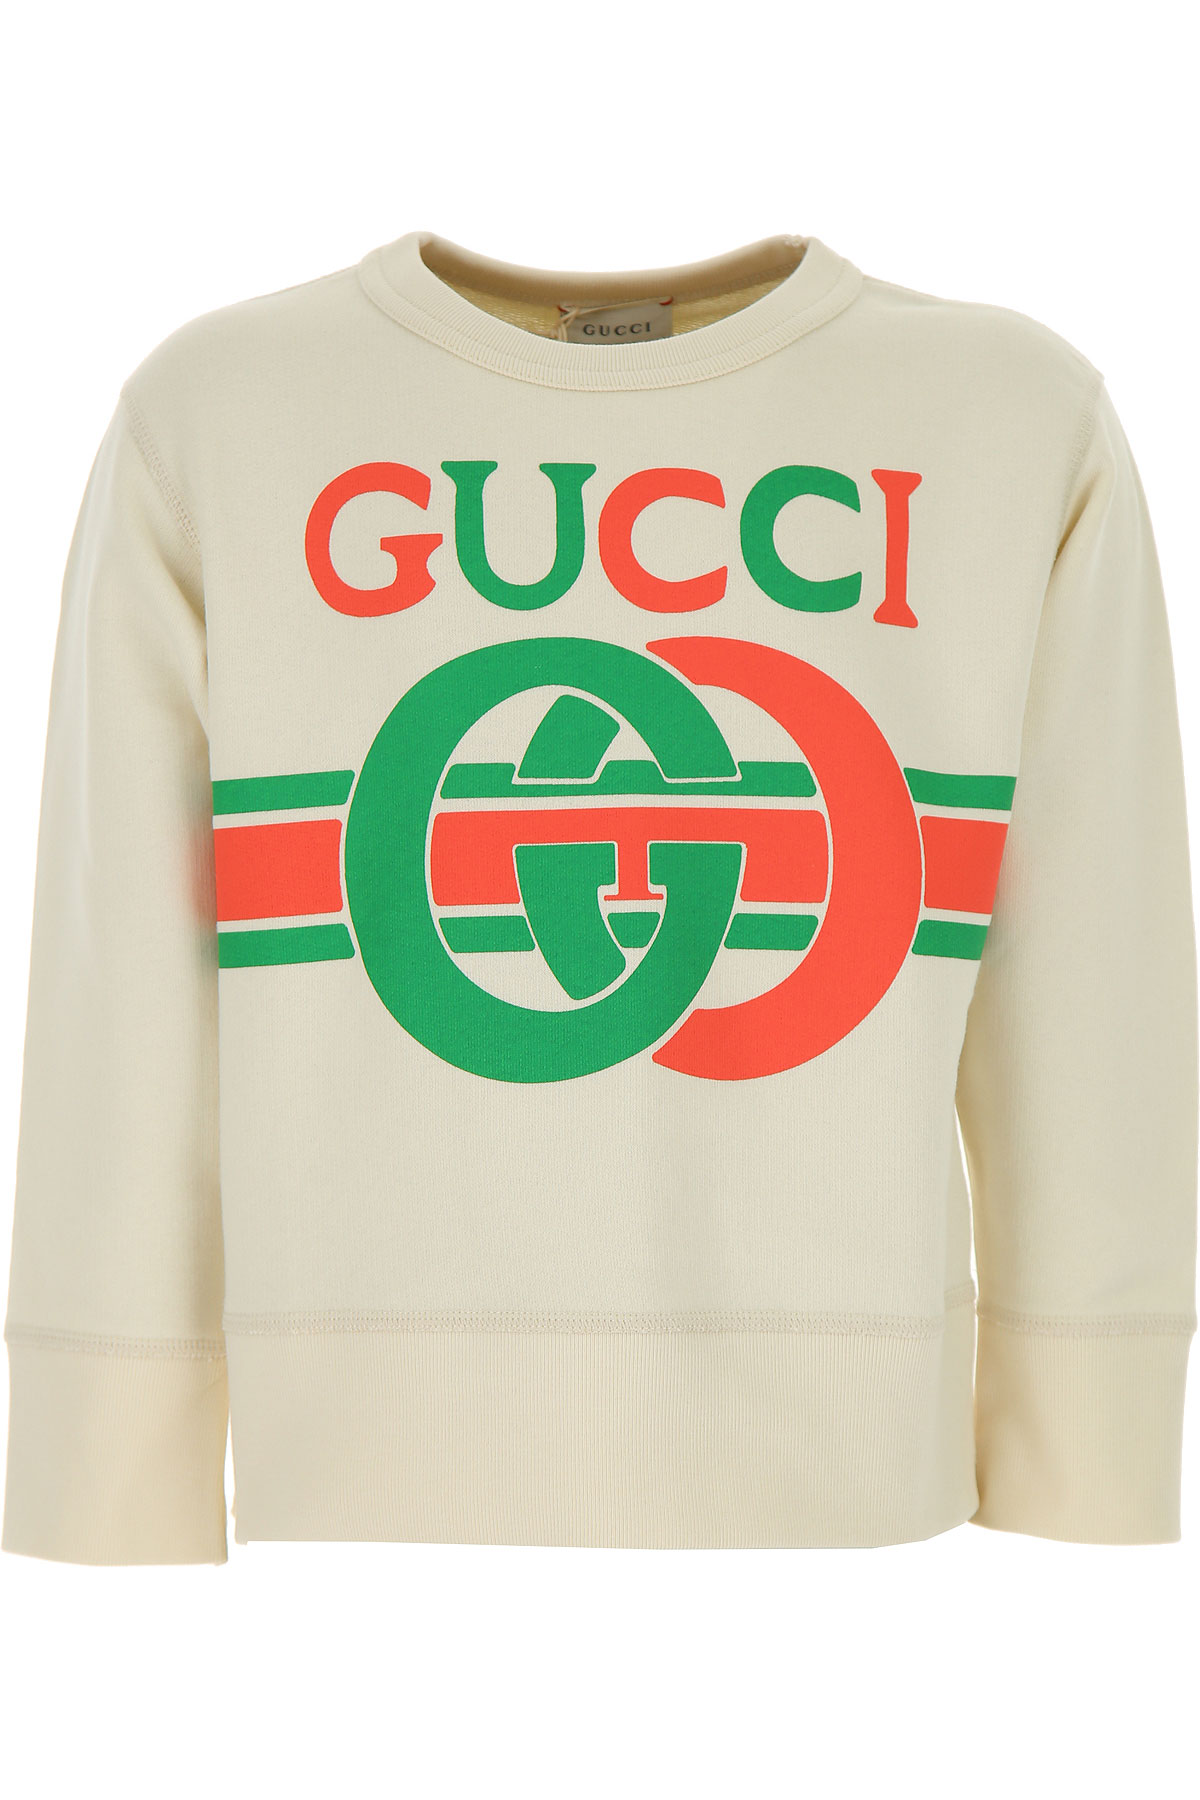 Gucci Kinder Sweatshirt & Kapuzenpullover für Jungen Günstig im Sale, Weiss, Baumwolle, 2017, 4Y 8Y